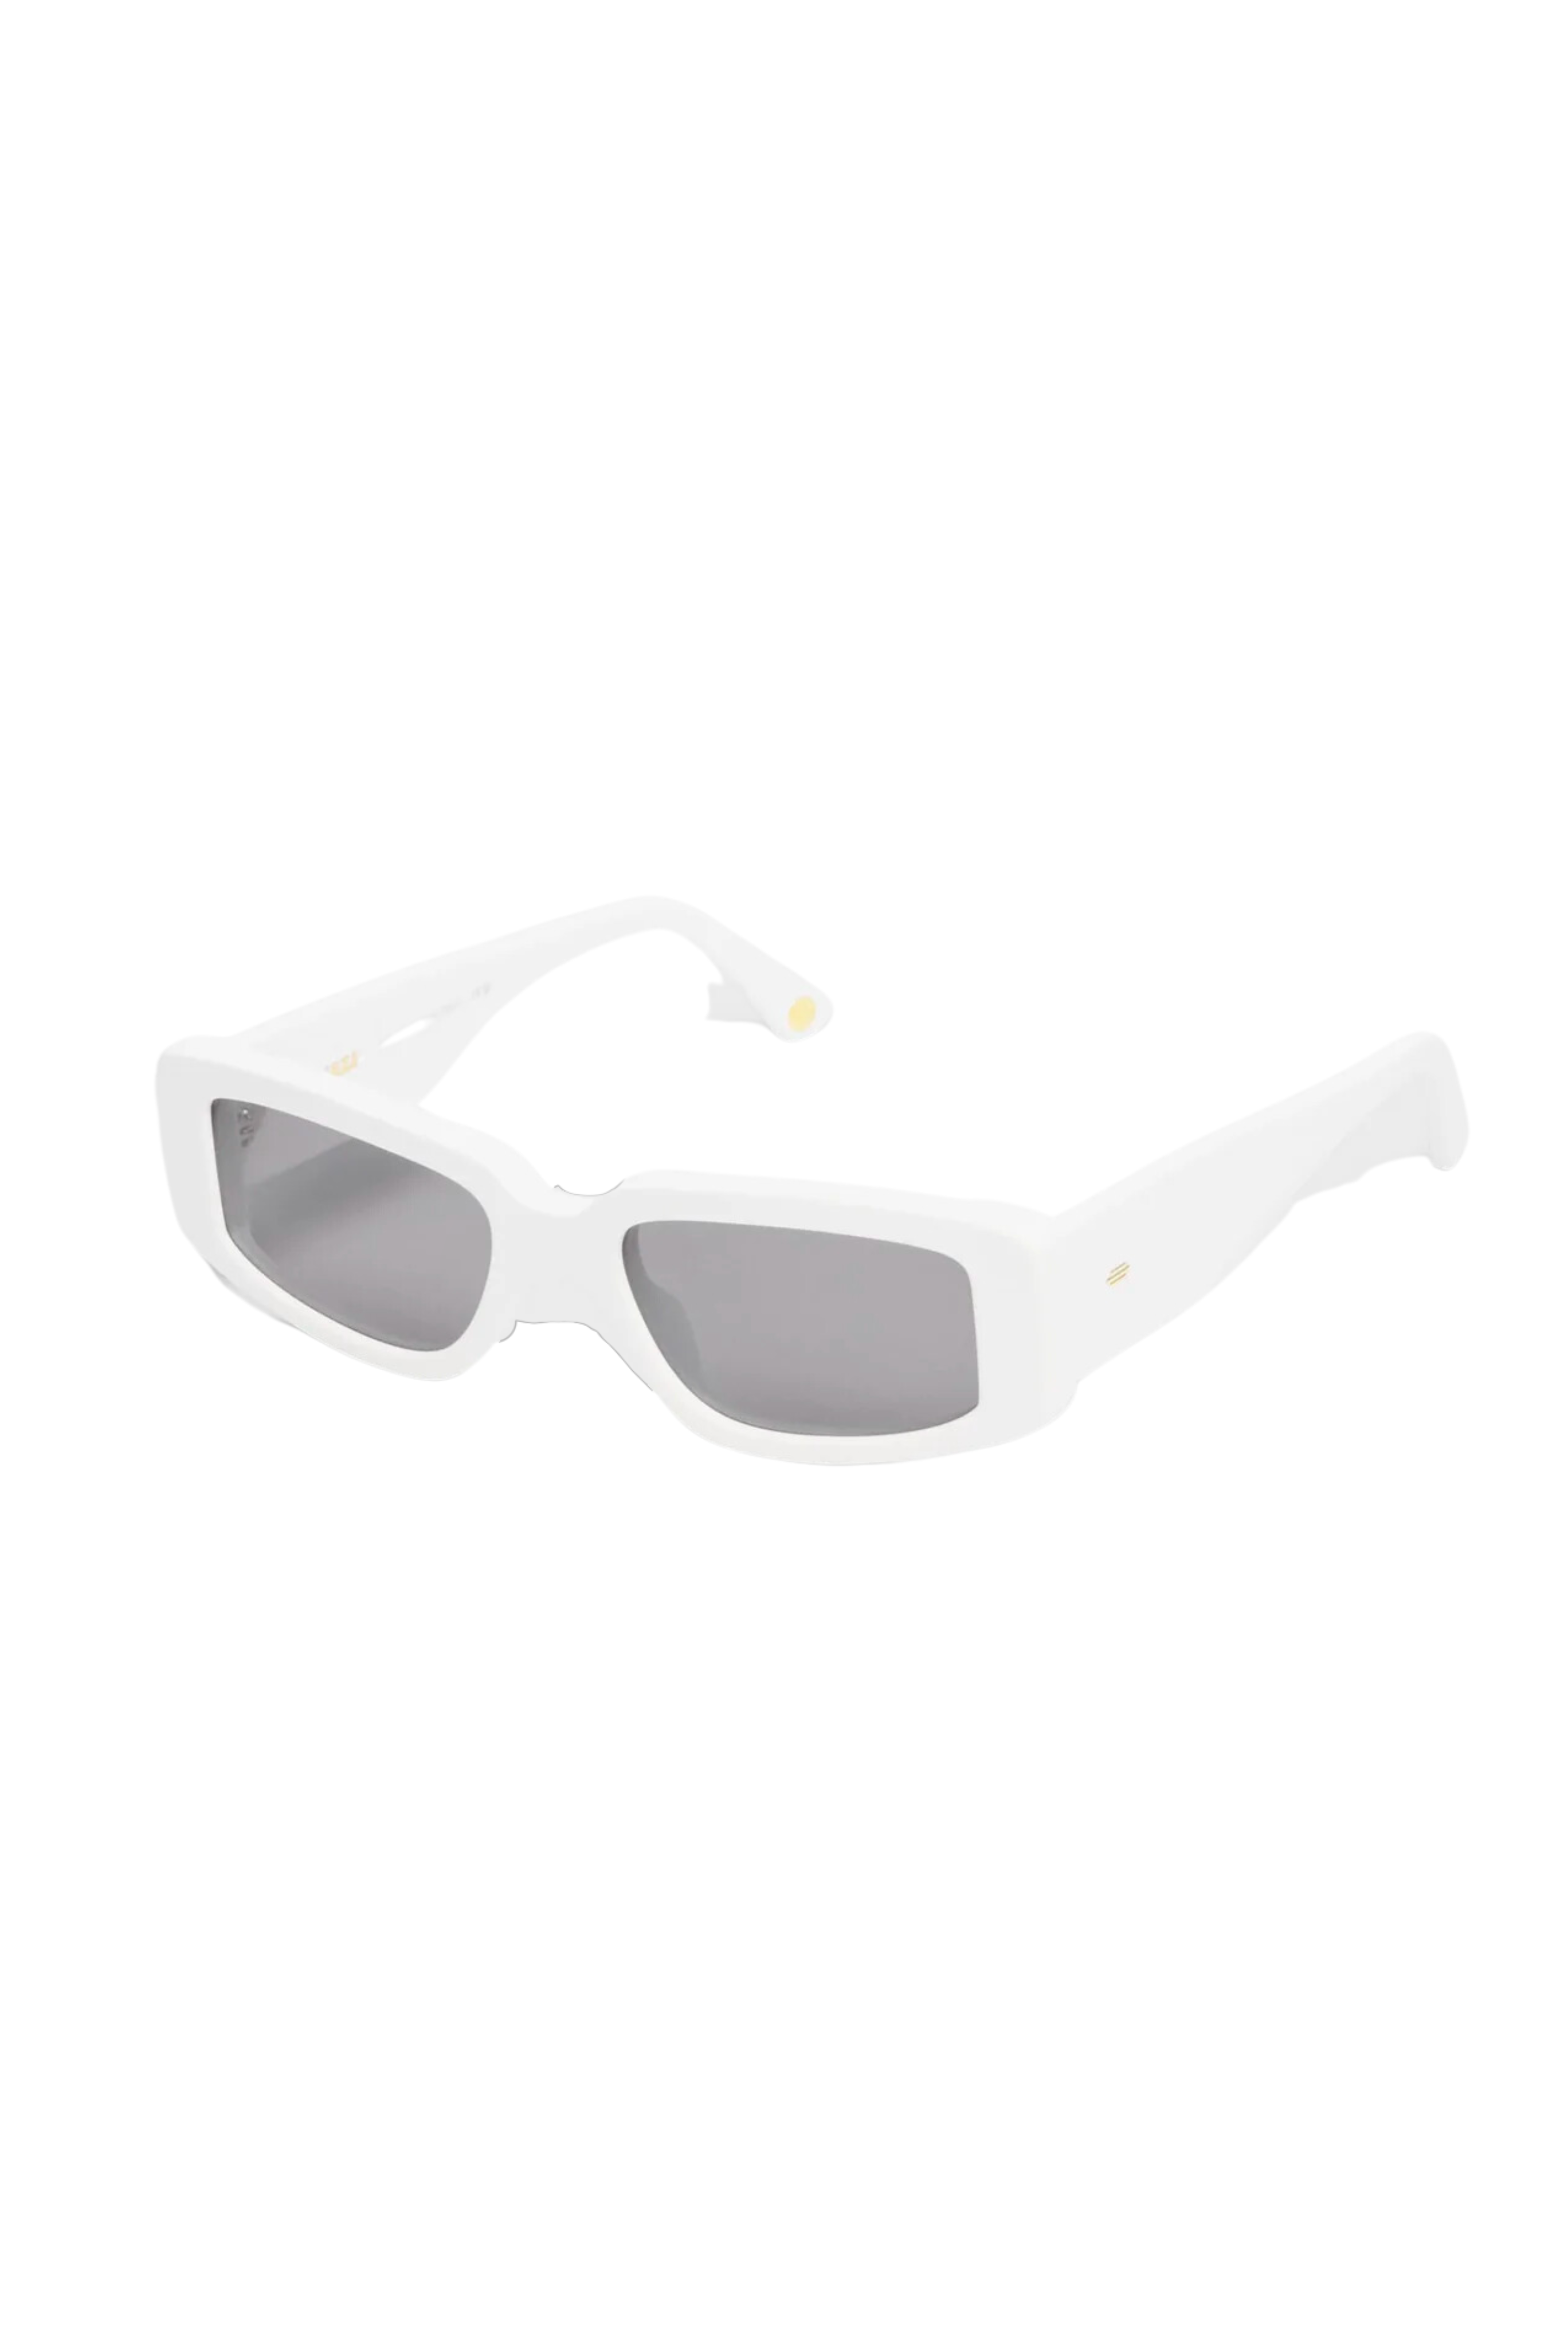 KIMEZE Concept 2 Sunglasses in White